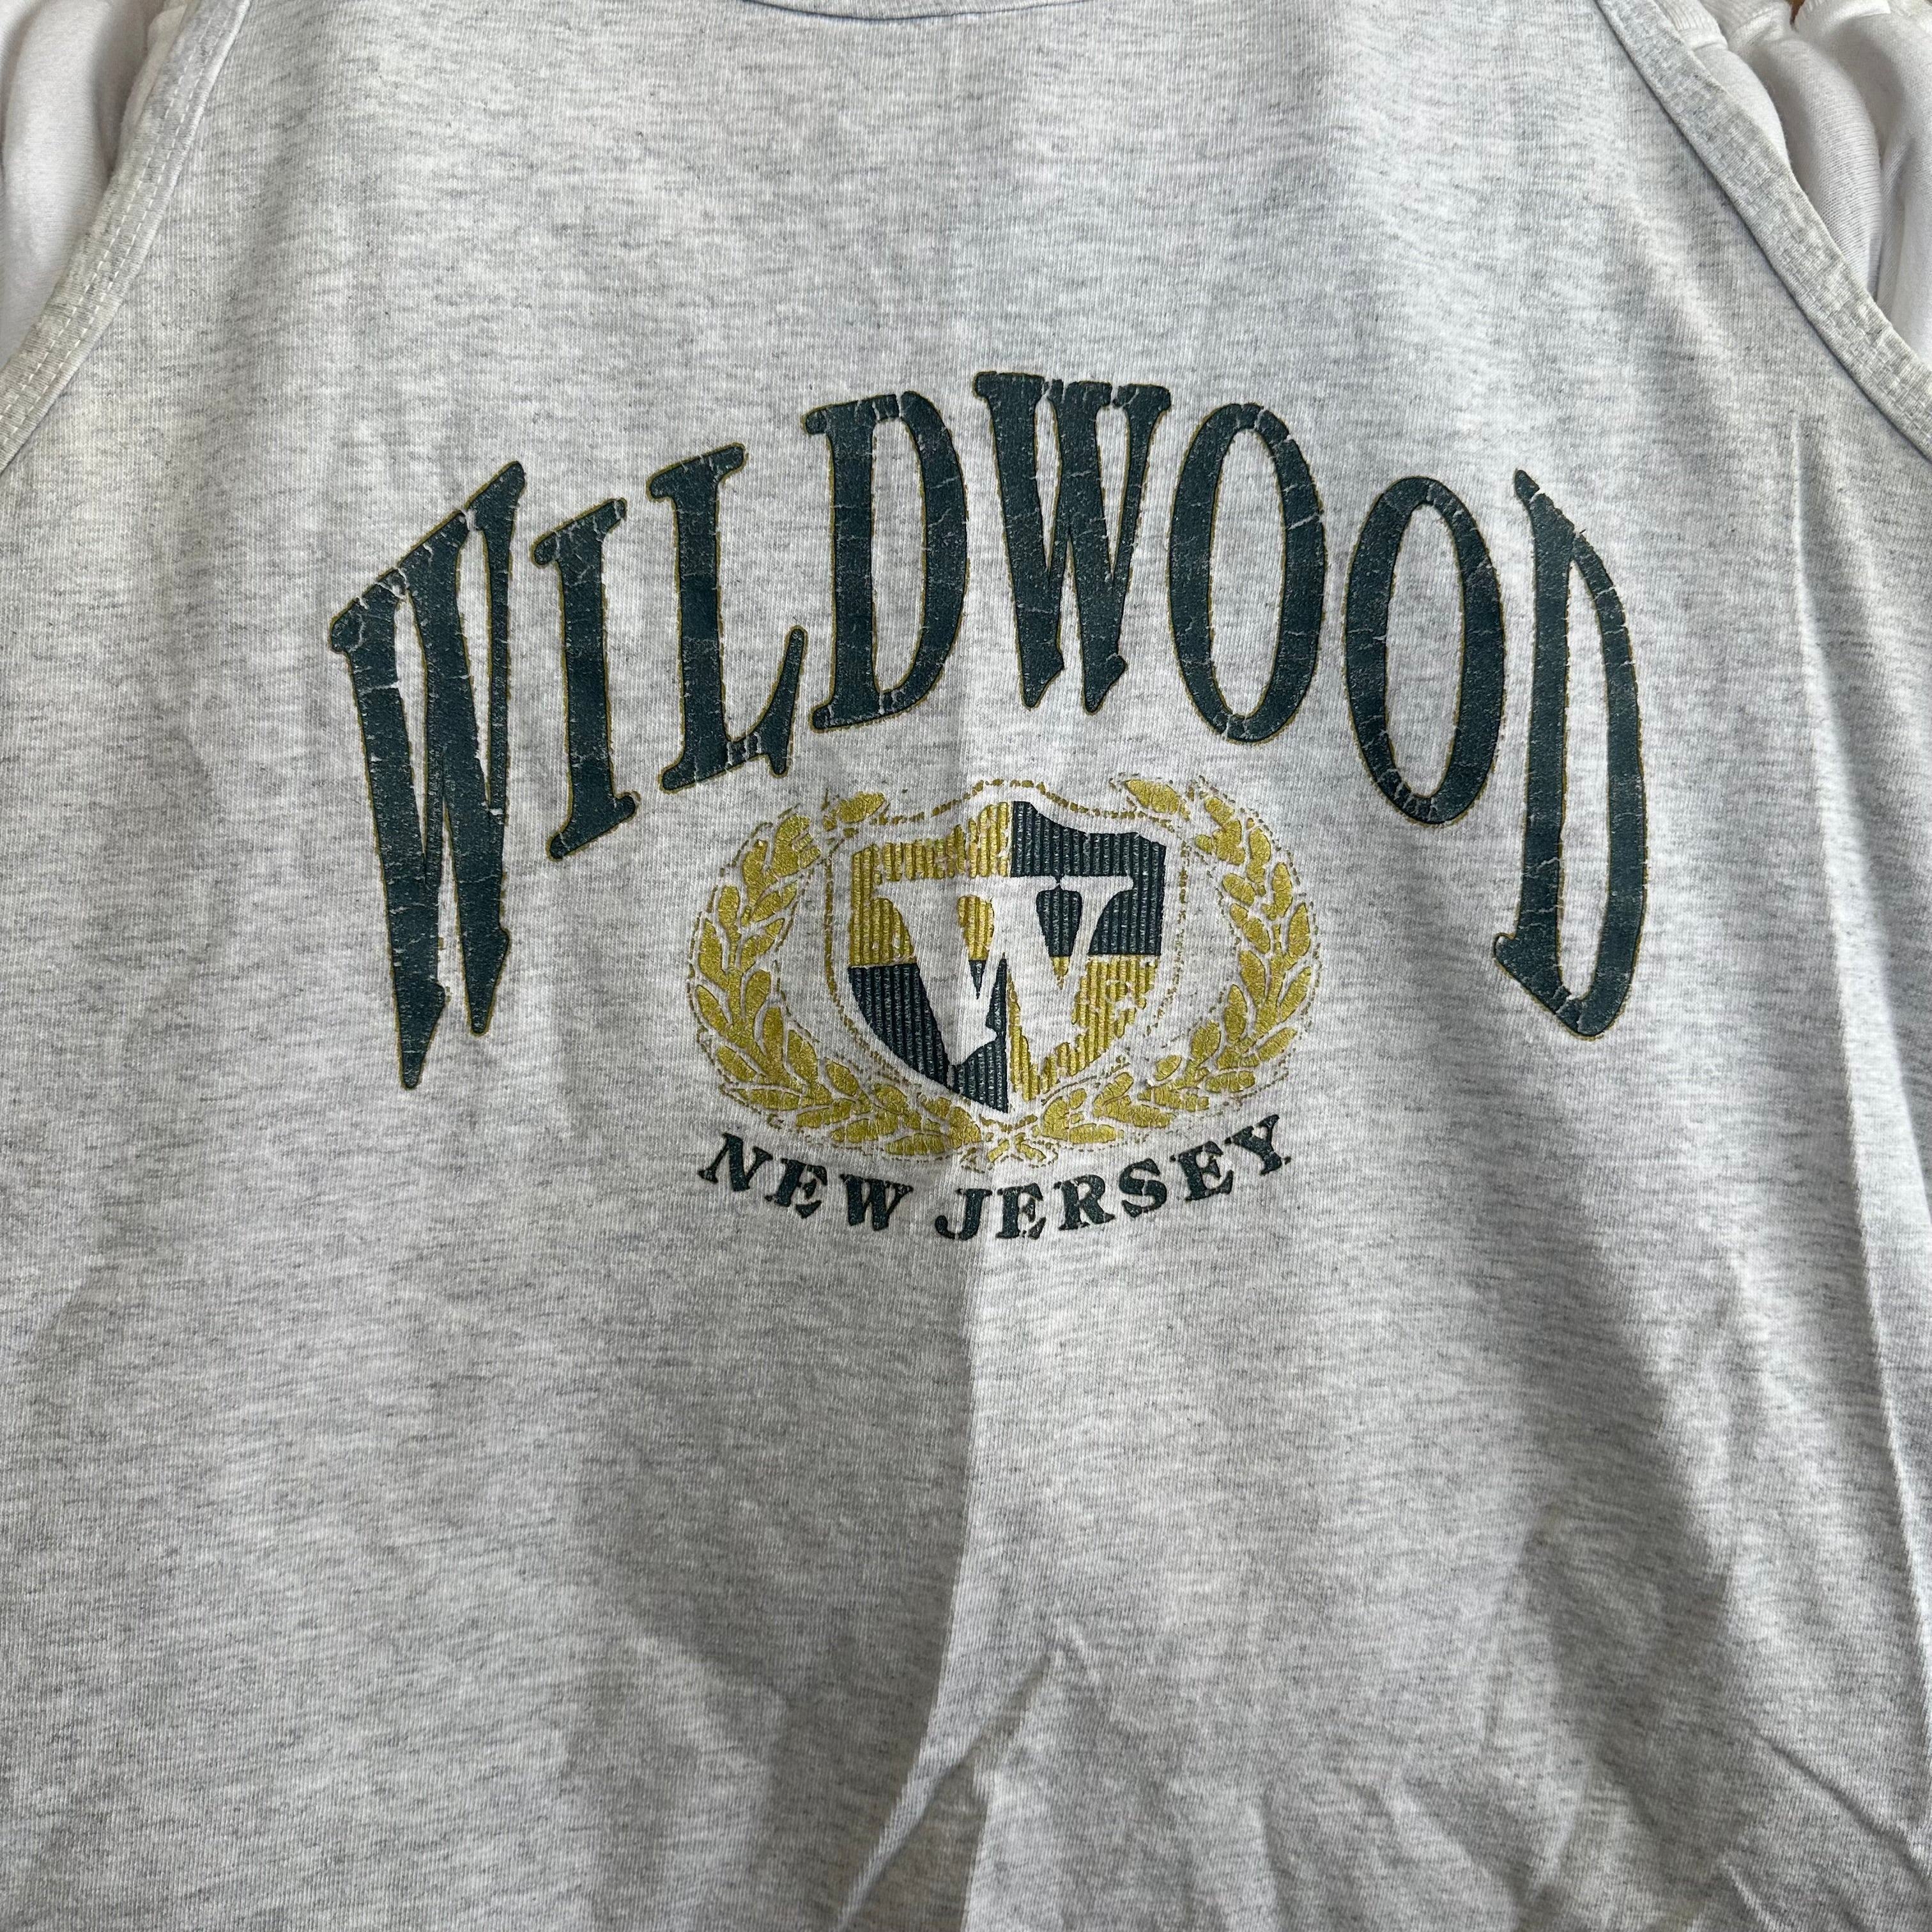 Wildwood New Jersey Tank Top